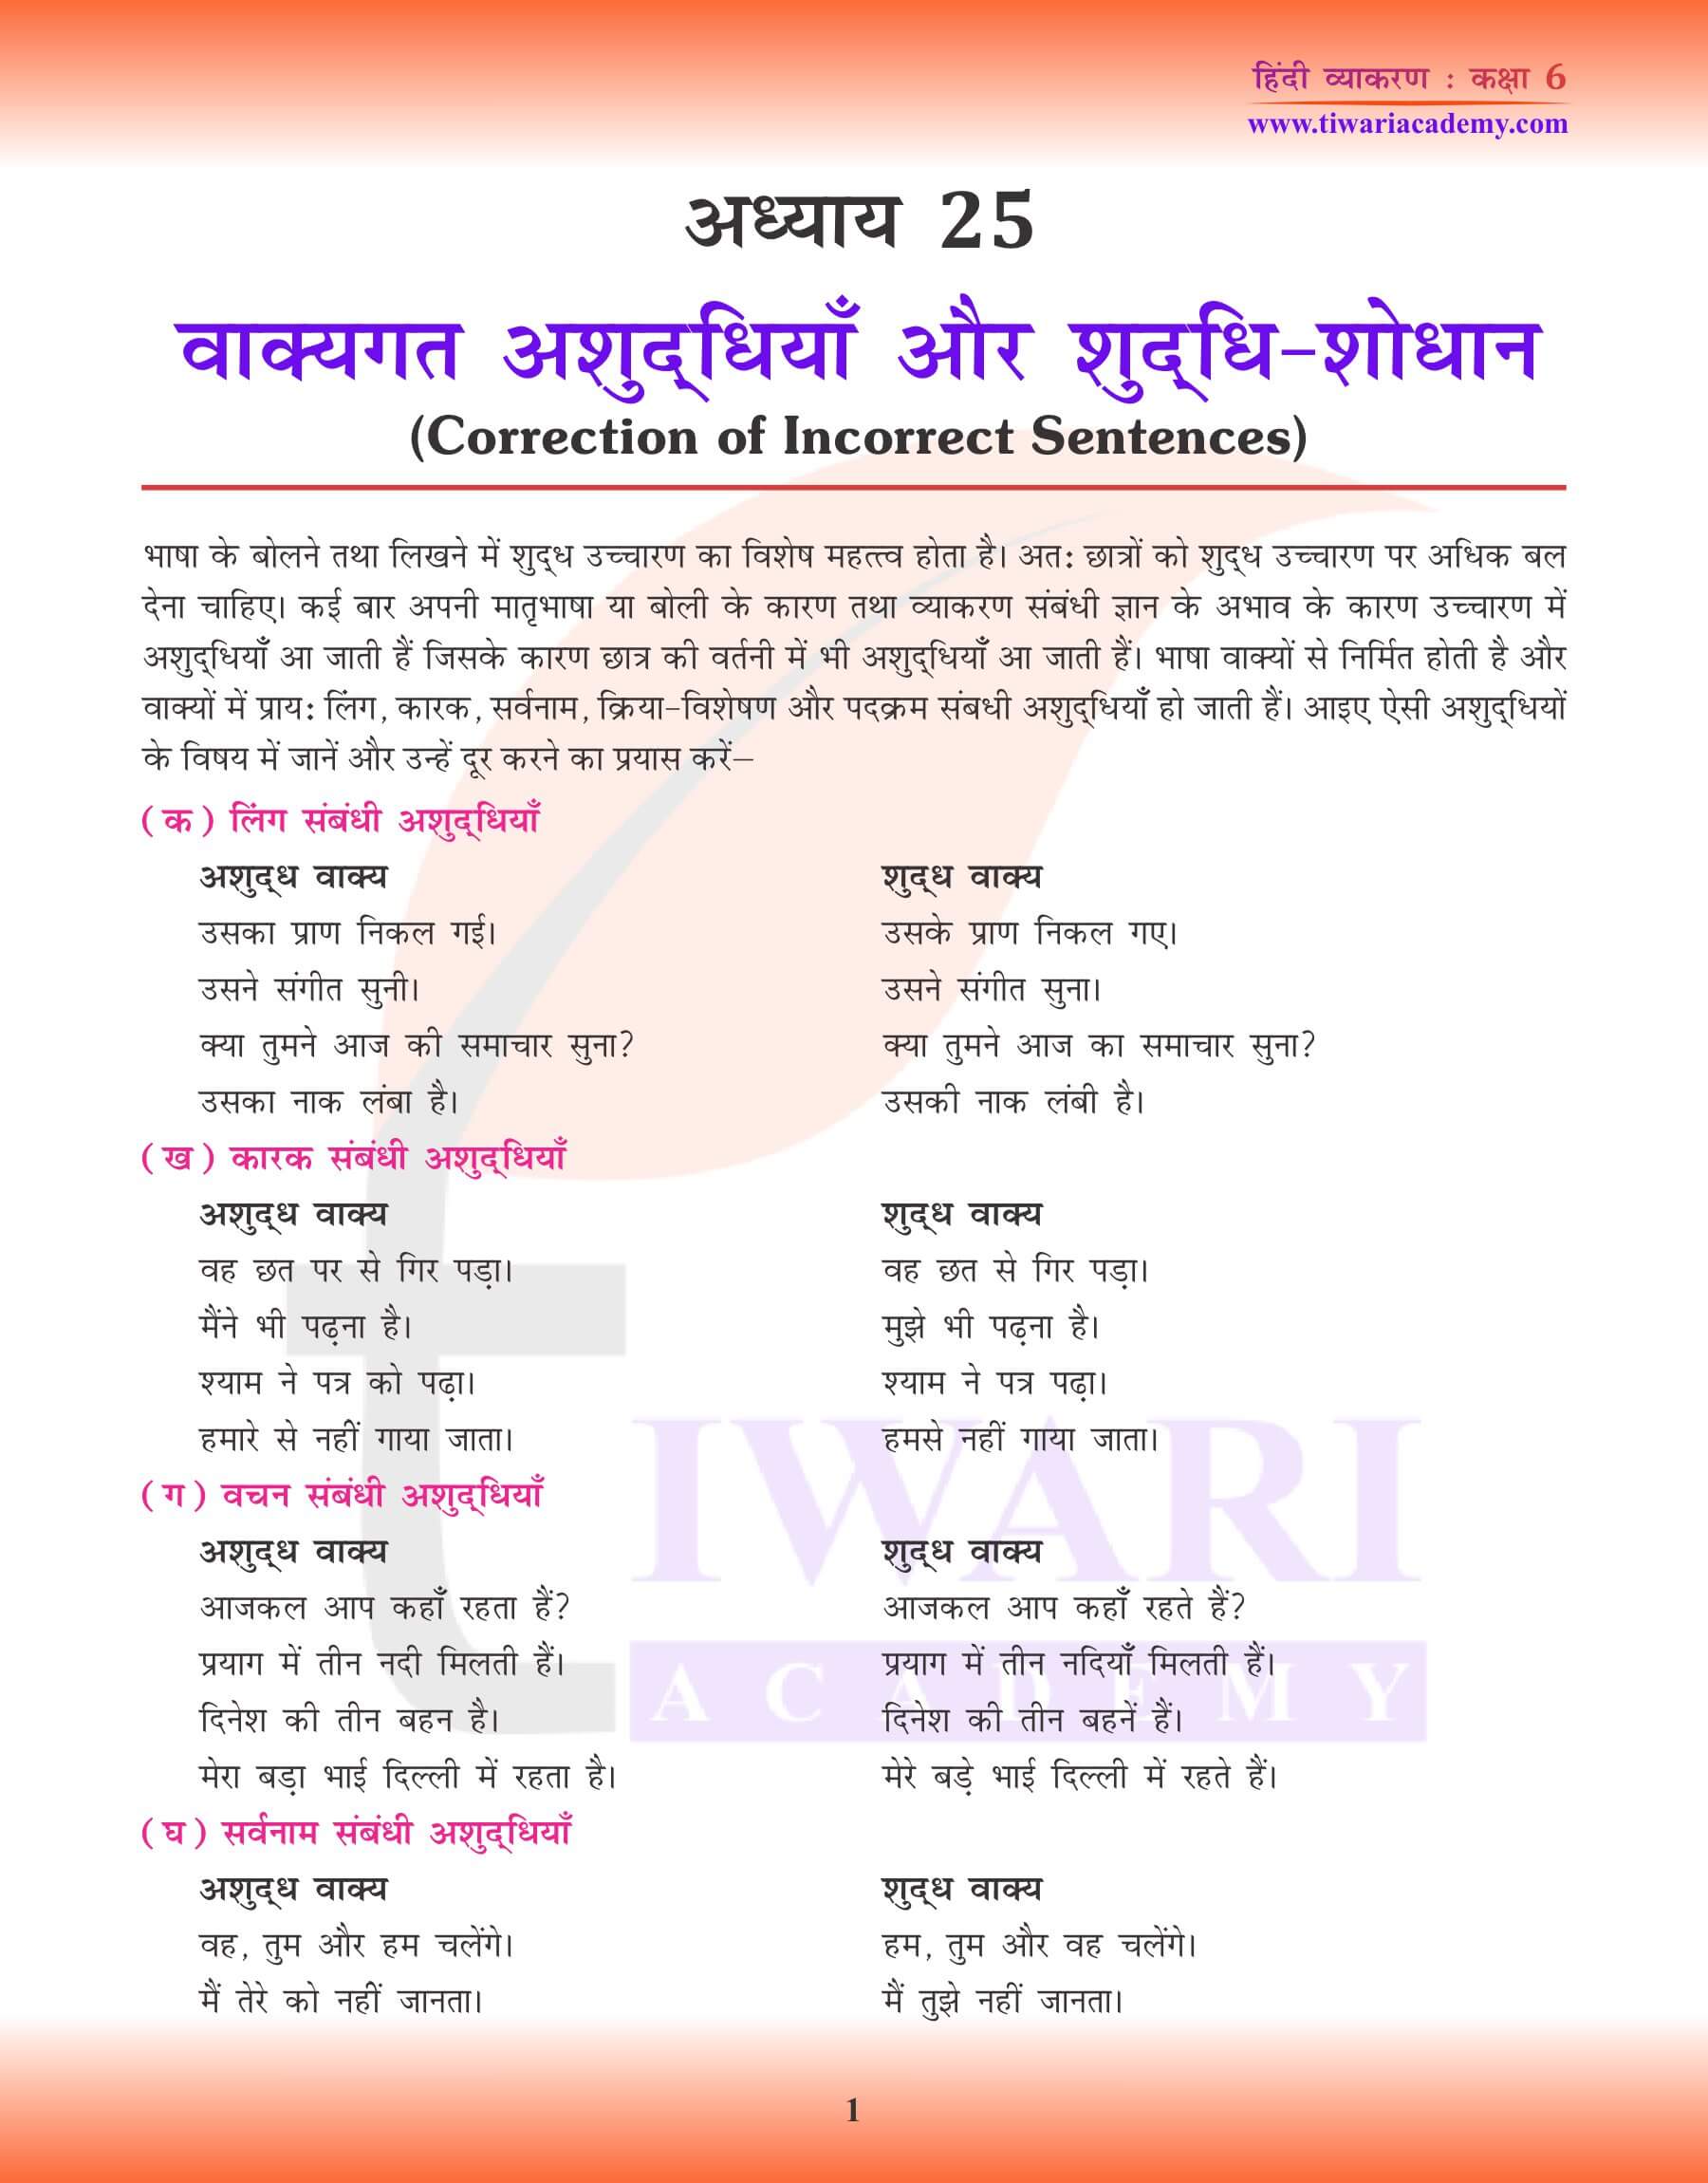 कक्षा 6 हिंदी व्याकरण अध्याय 25 सामान्य अशुद्धियाँ के लिए पठन सामग्री